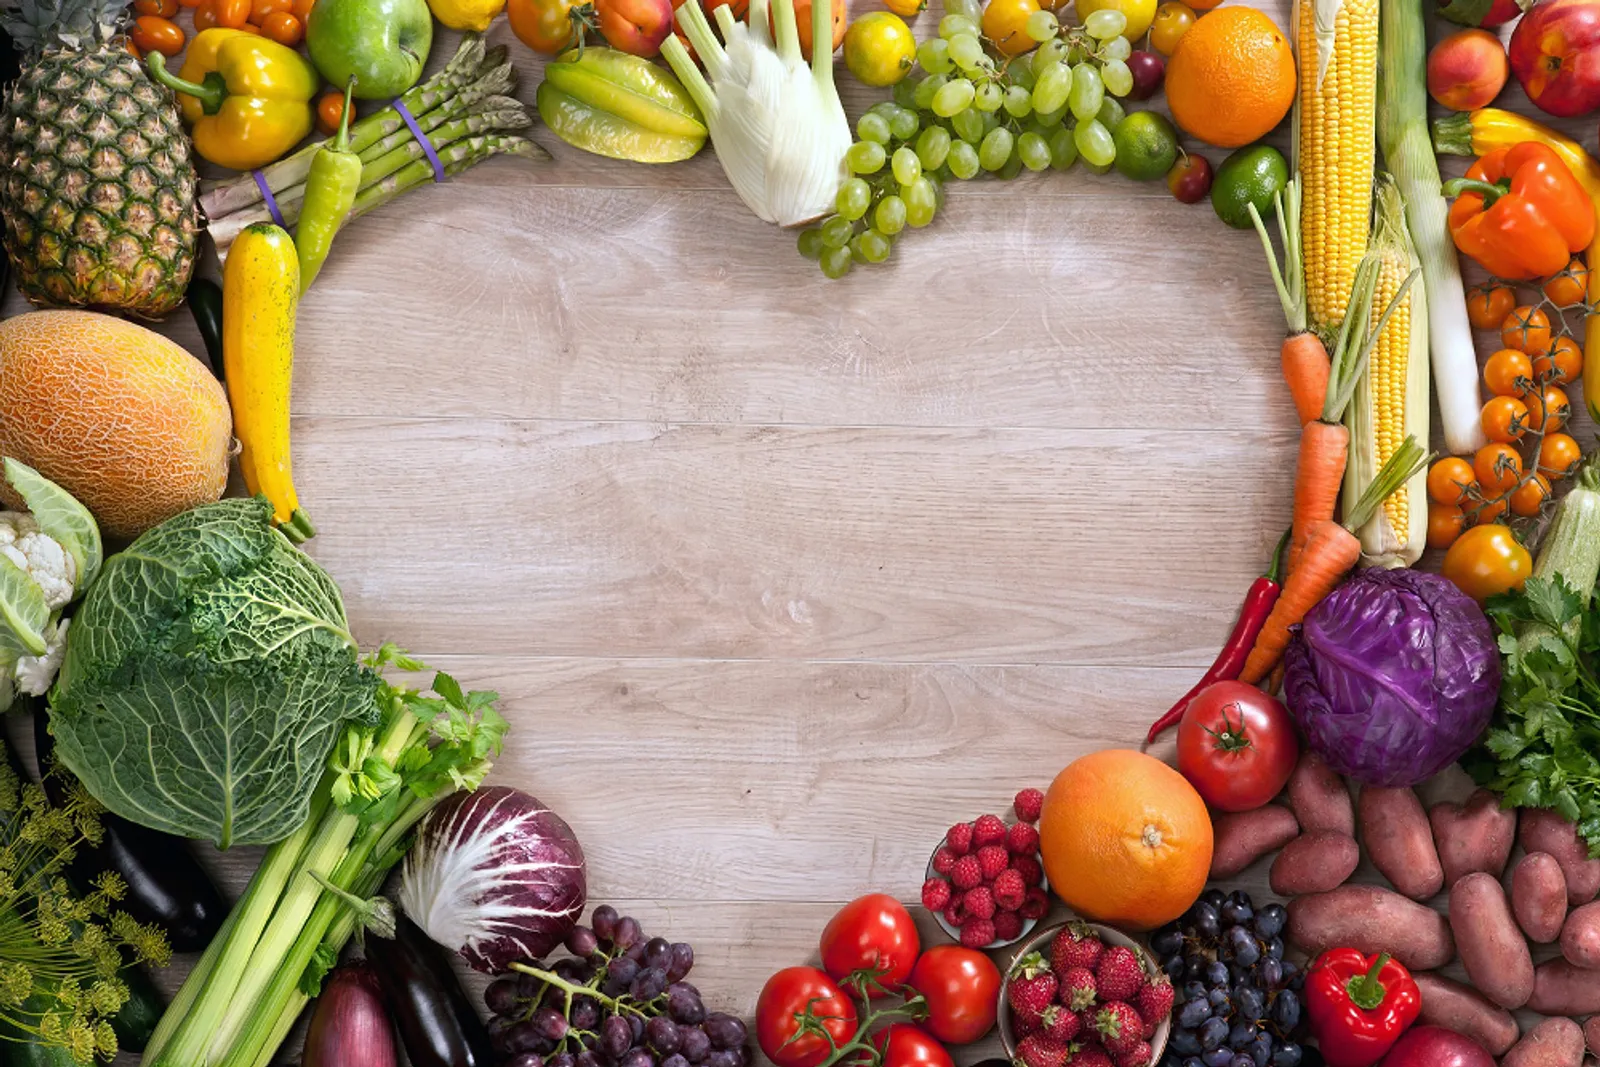  Ini 5 Makanan untuk Fungsi Organ Hati Jadi Lebih Sehat